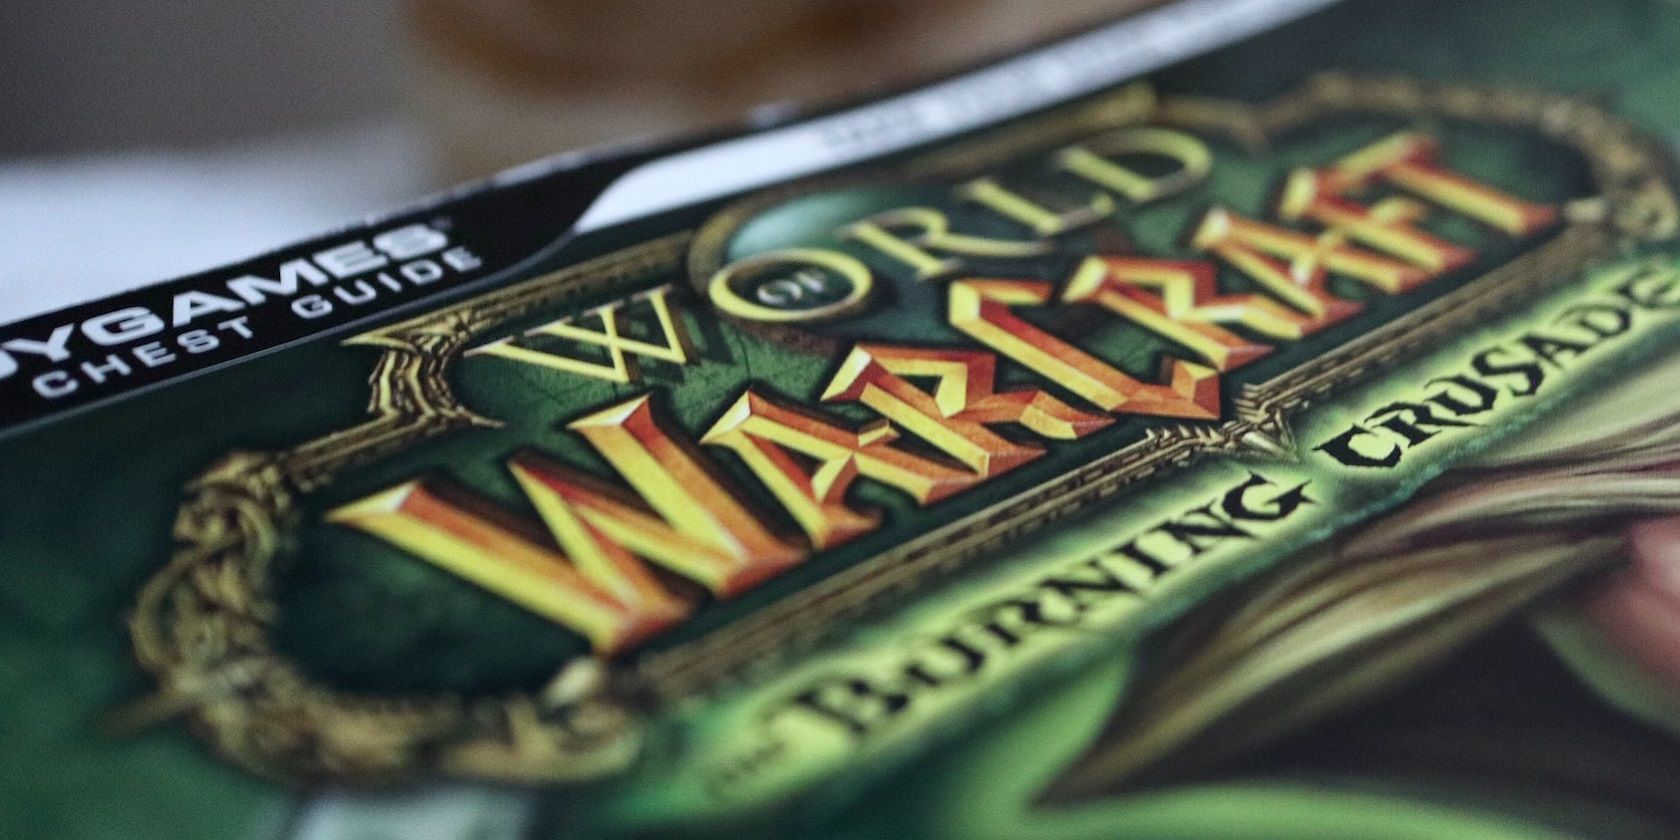 World of Warcraft magazine cover